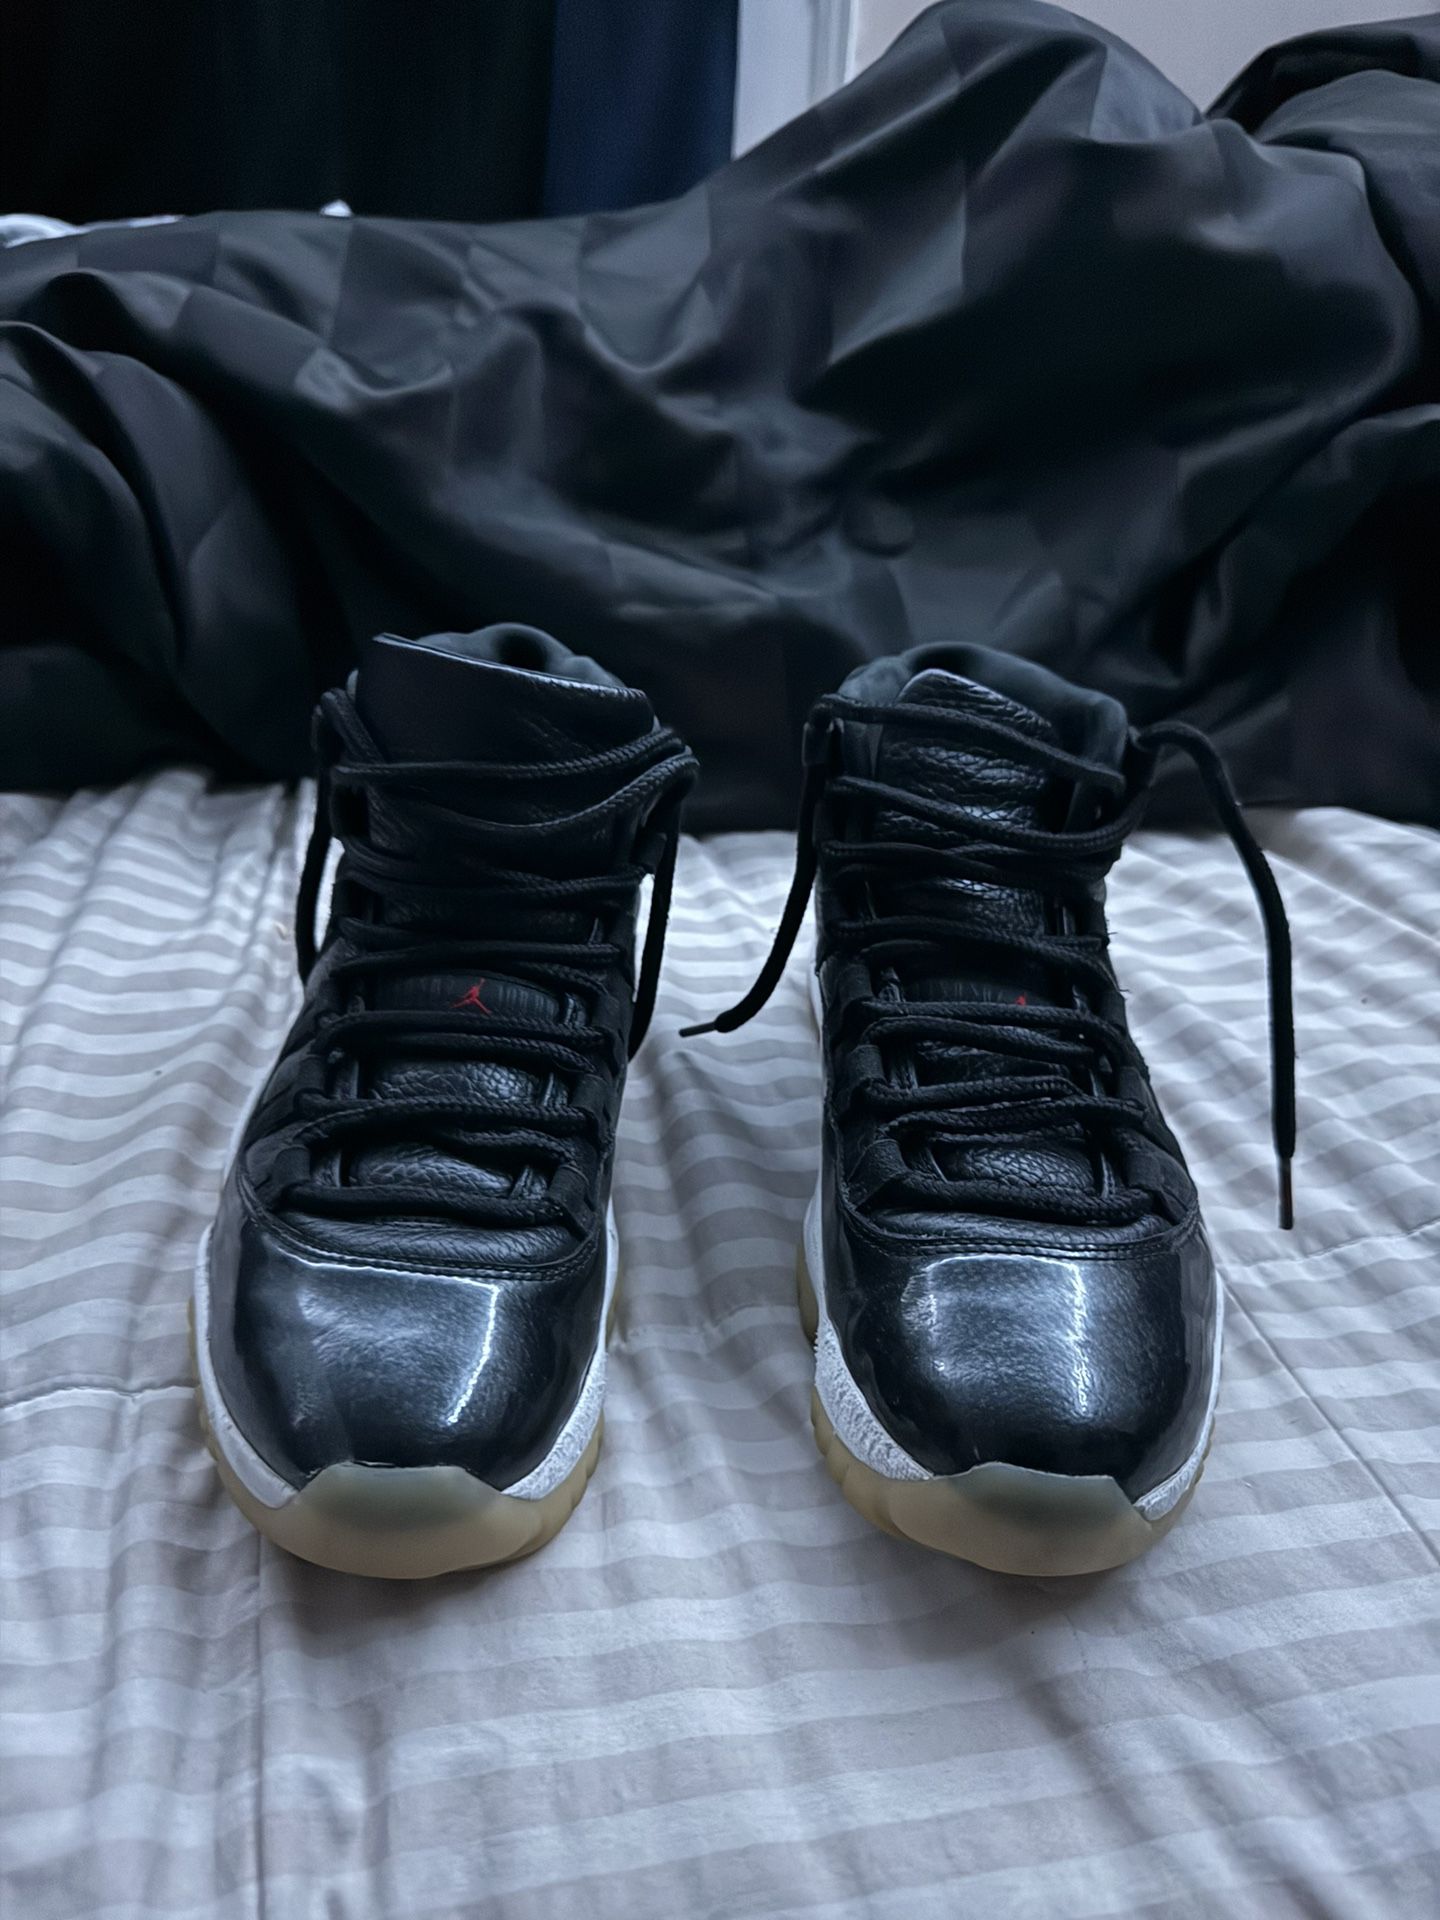 Jordan 11 “ 72-10 “ Size 8.5